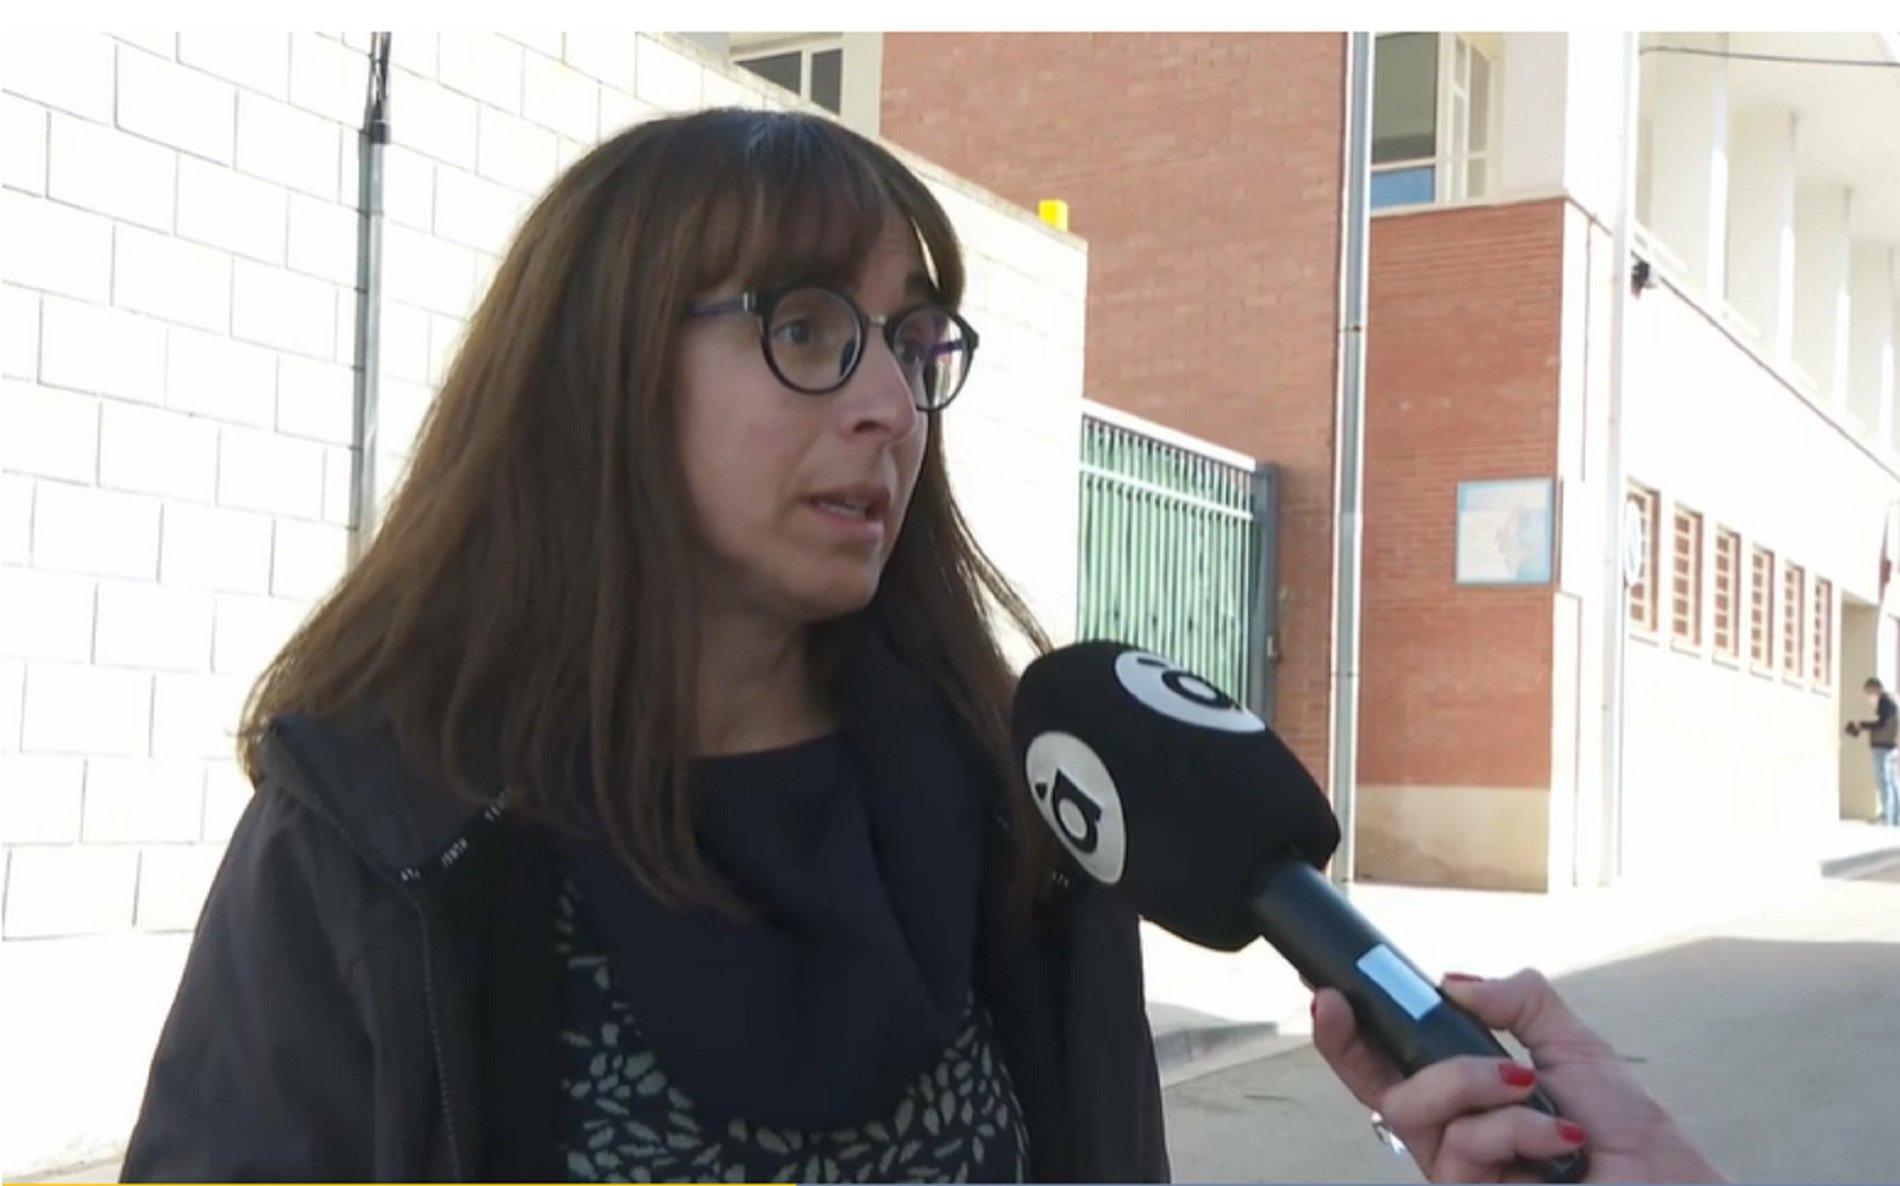 Un metge a Benilloba: "Si no me hablas en castellano, no te atenderé"